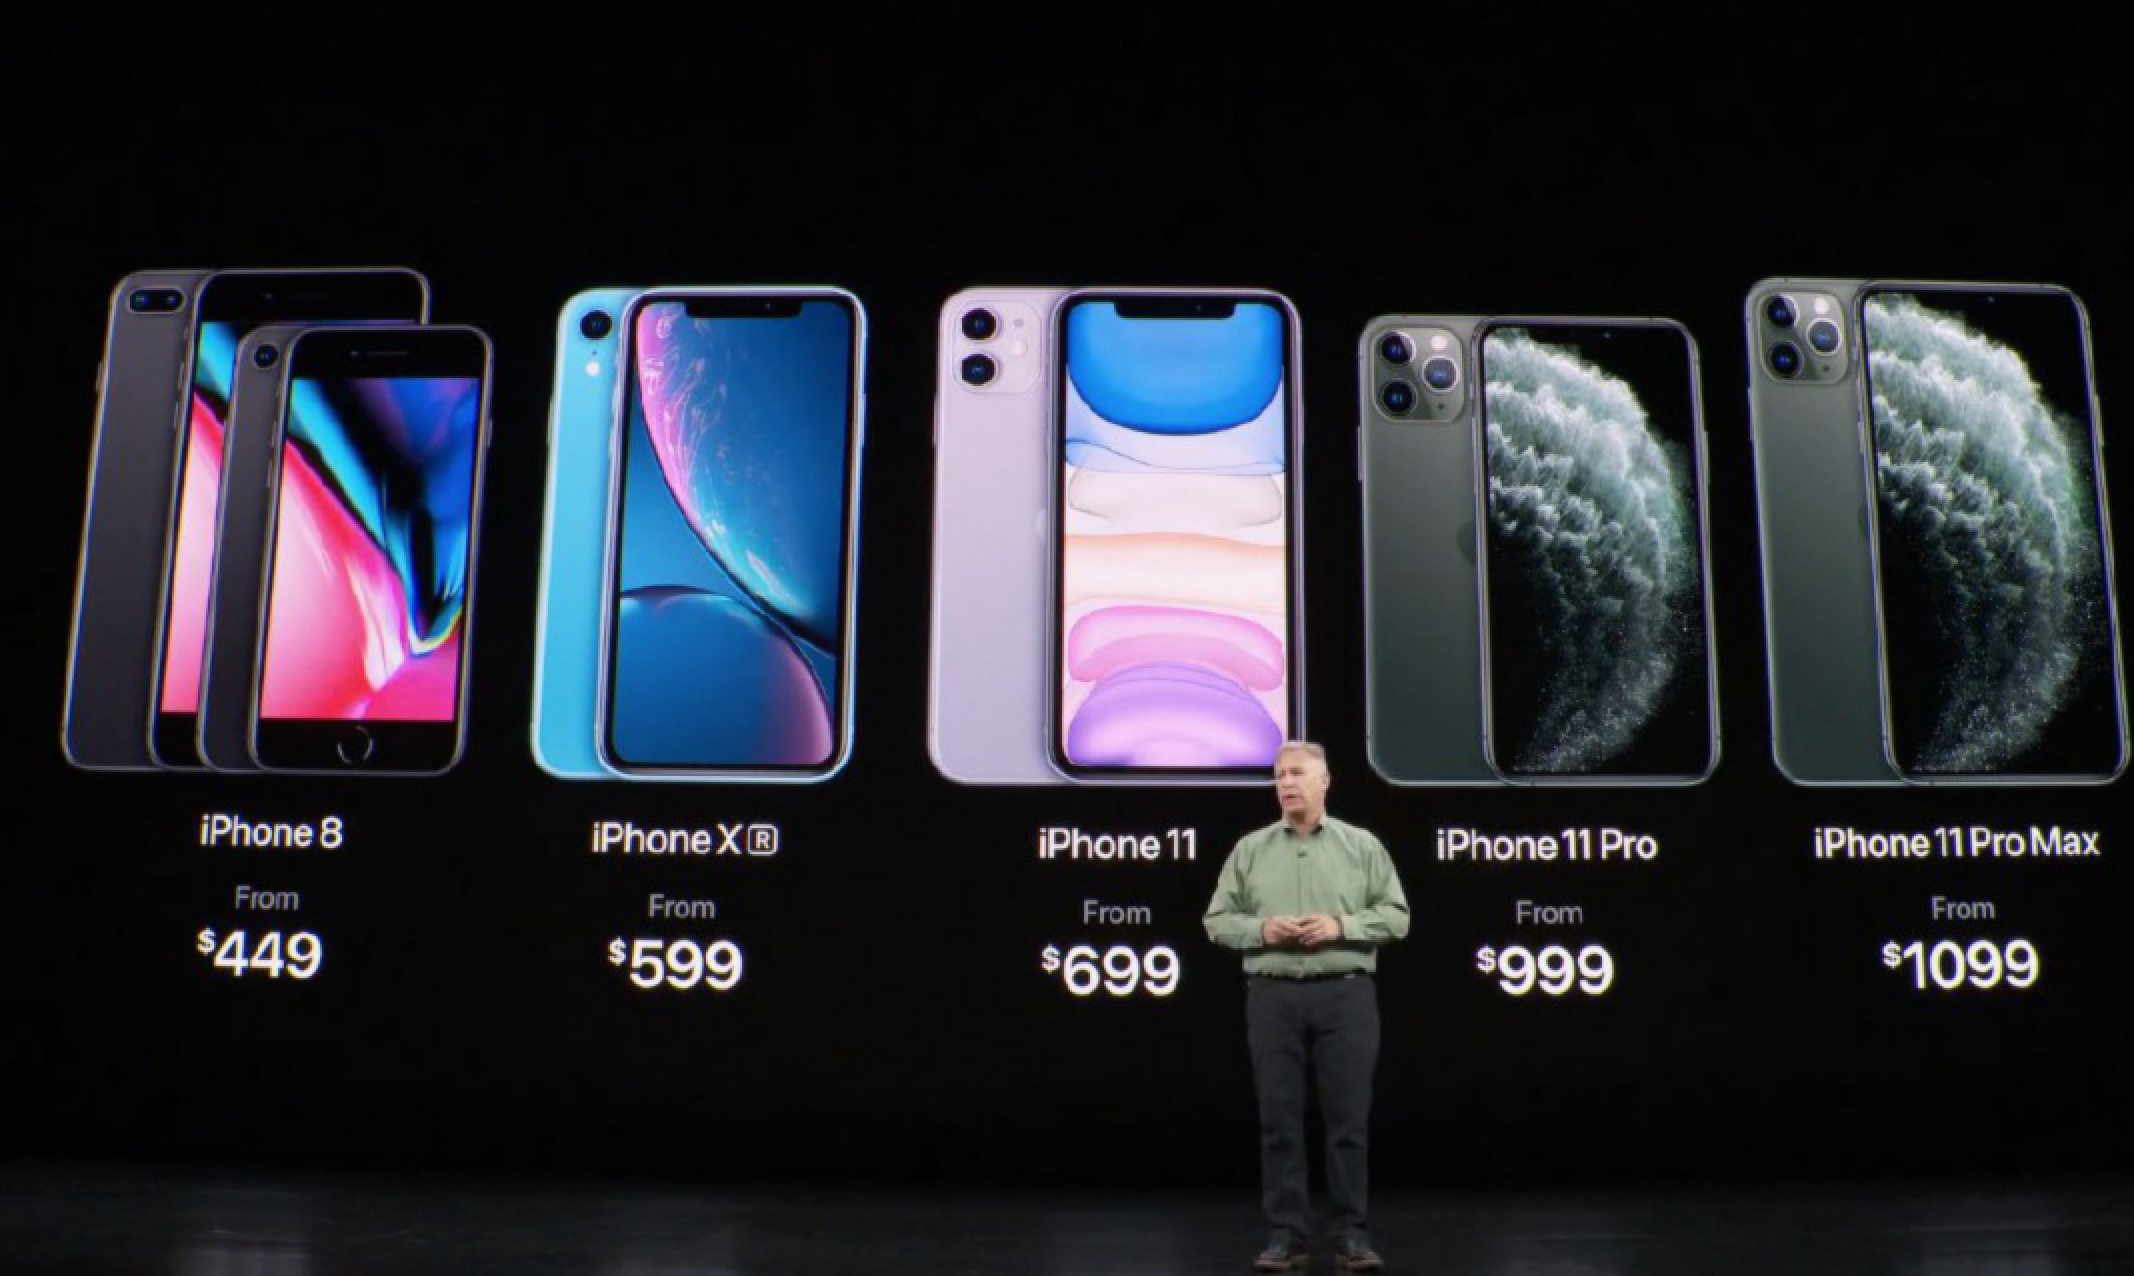 Apple iPhone Xs y iPhone Xs Max: así son los sucesores del iPhone X